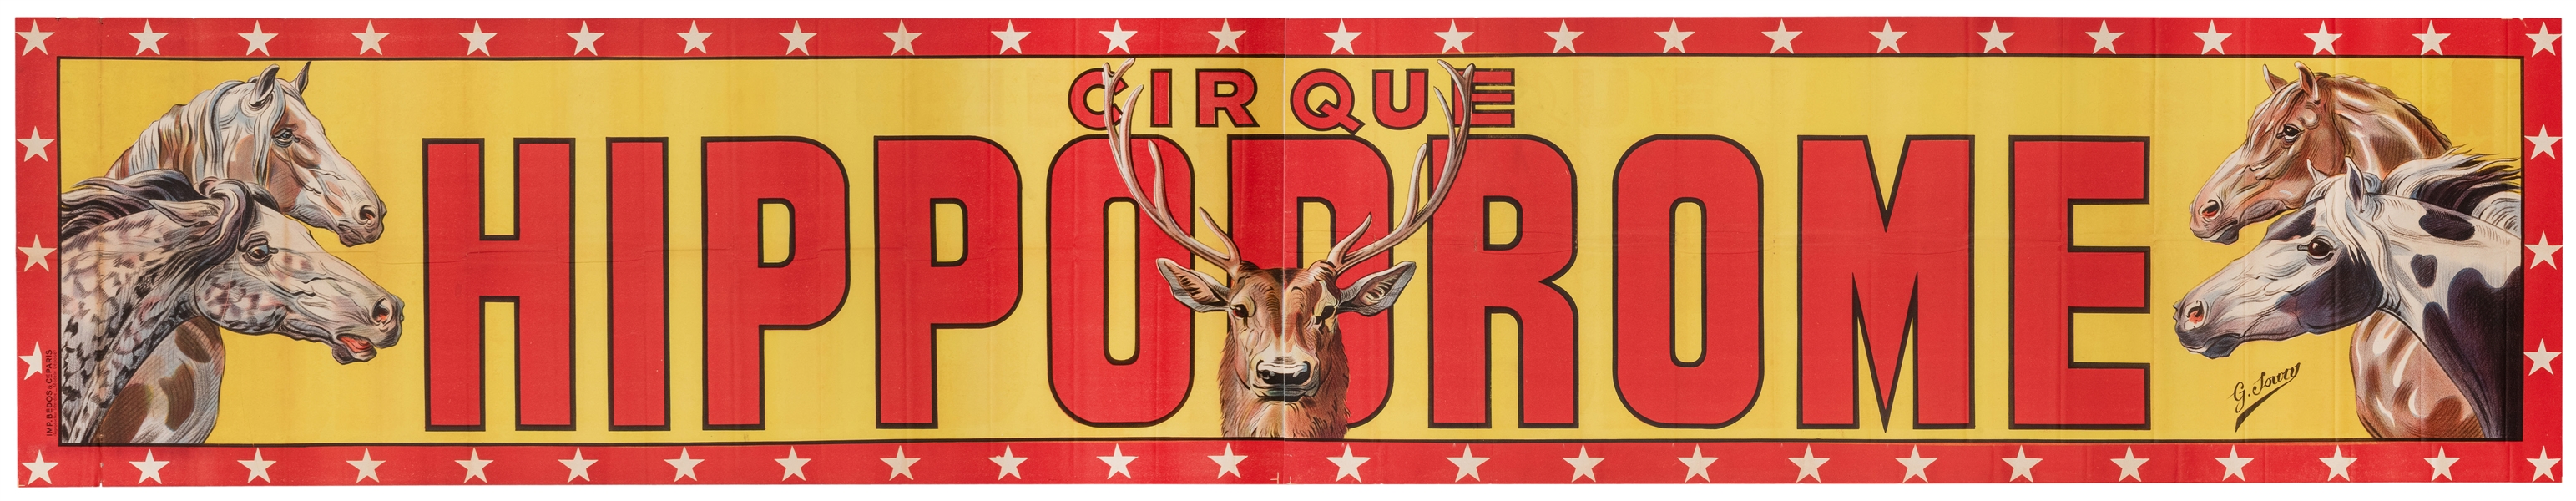  Cirque Hippodrome. Paris: Bedos & Cie., ca. 1950s. Lithogra...